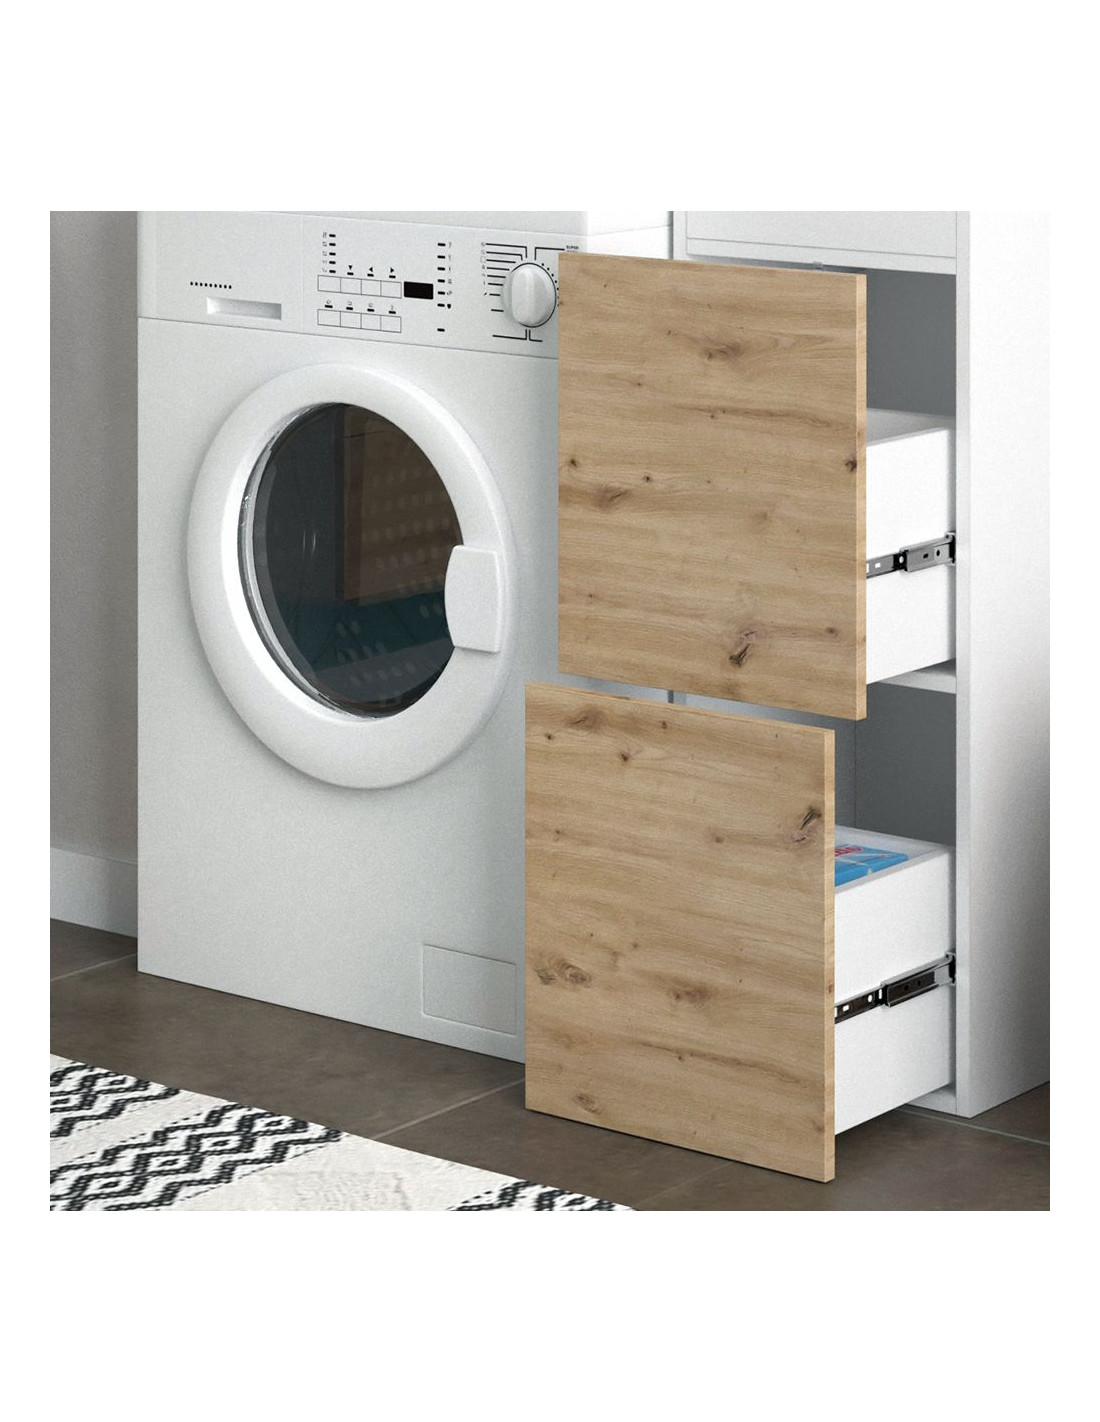 Armoire lave-linge avec rangement blanc chêne salle bain - Ciel & terre